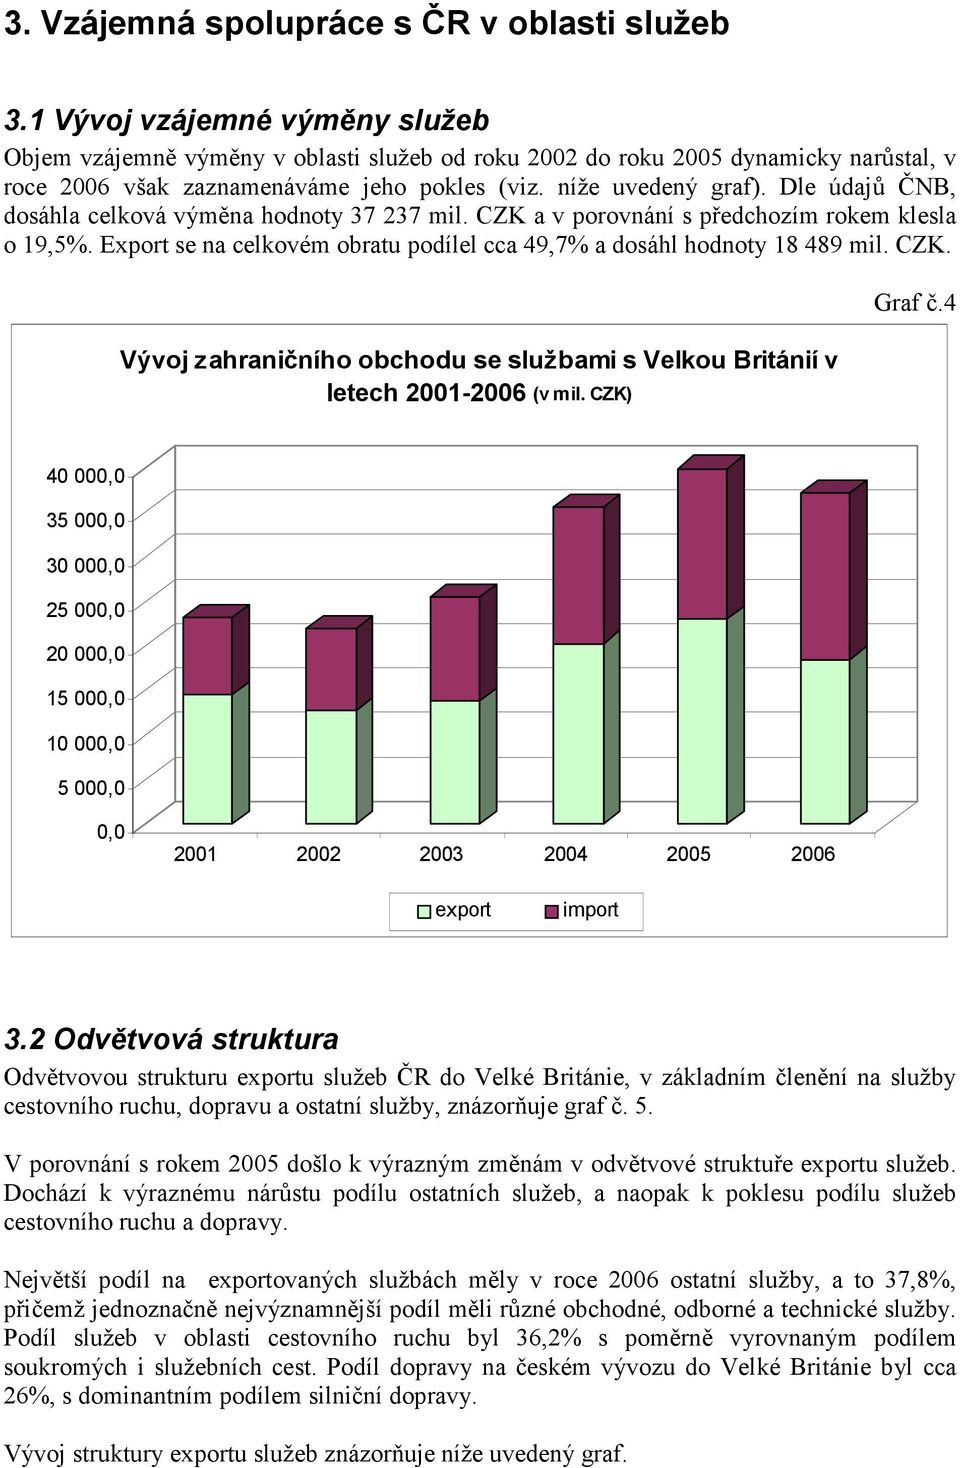 Dle údajů ČNB, dosáhla celková výměna hodnoty 37 237 mil. CZK a v porovnání s předchozím rokem klesla o 19,5%. Export se na celkovém obratu podílel cca 49,7% a dosáhl hodnoty 18 489 mil. CZK. Vývoj zahraničního obchodu se službami s Velkou Británií v letech 2001-2006 (v mil.